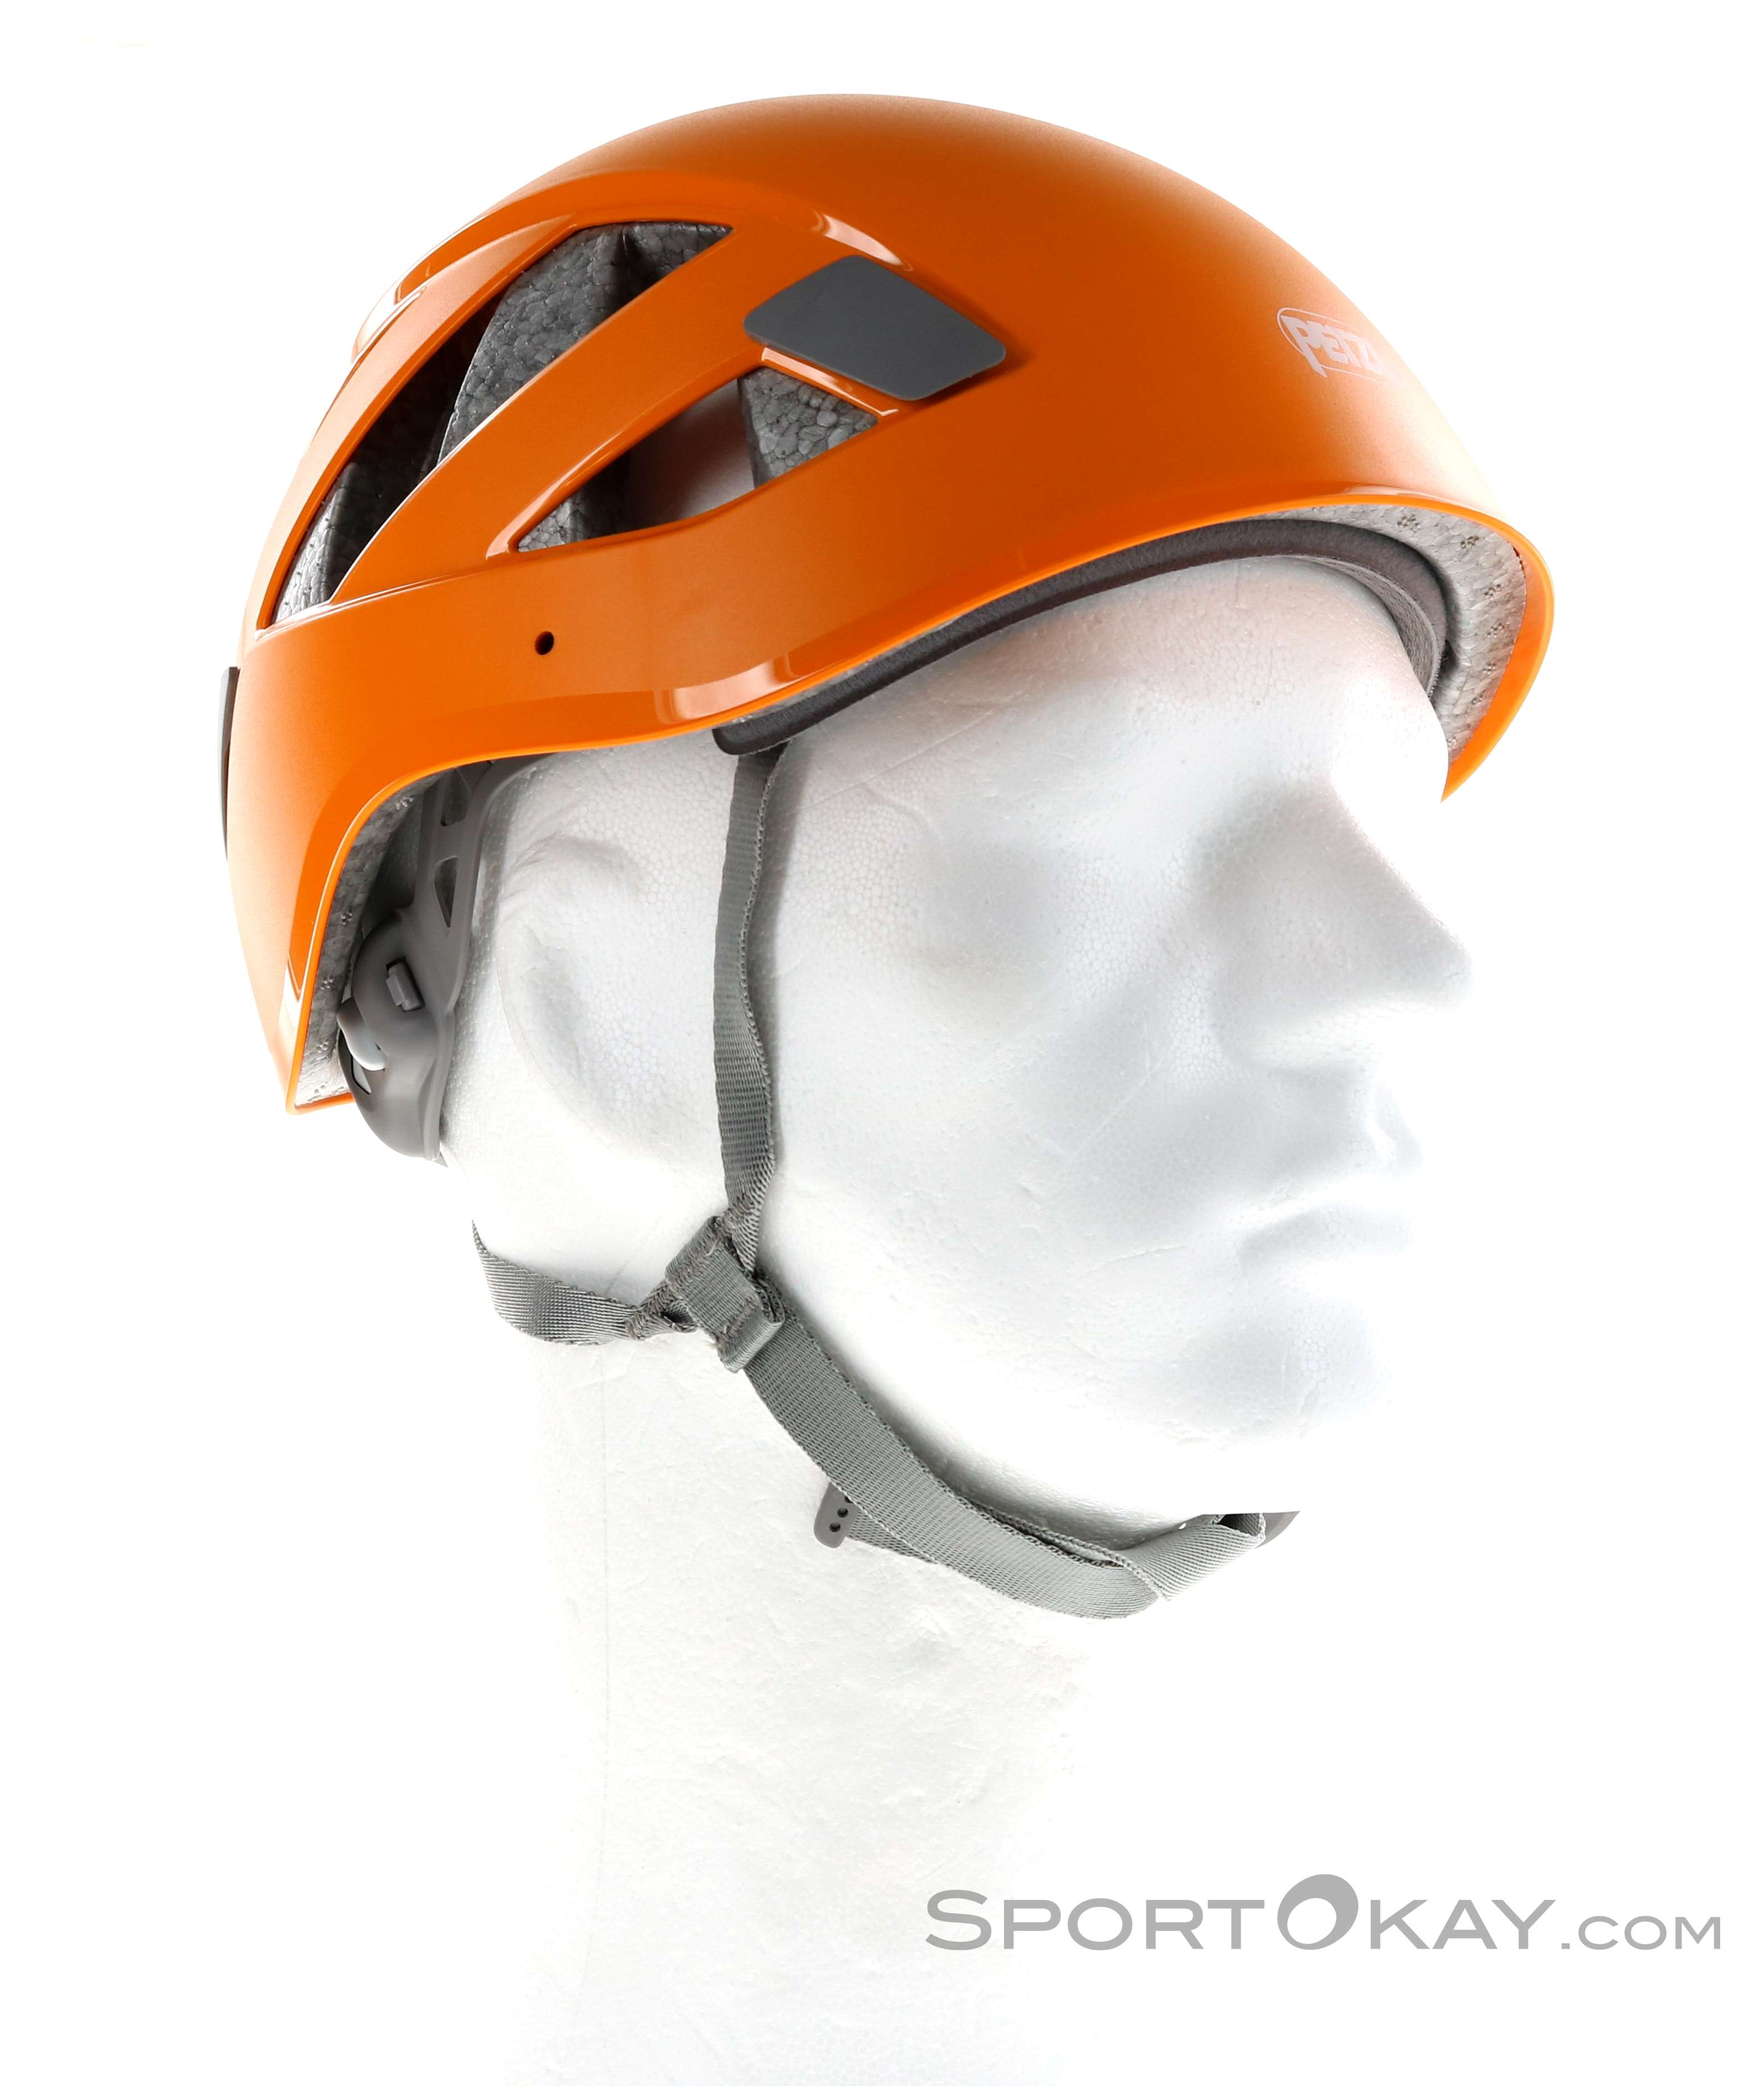 Petzl Boreo Helmet Complete Men's Orange Size 2 